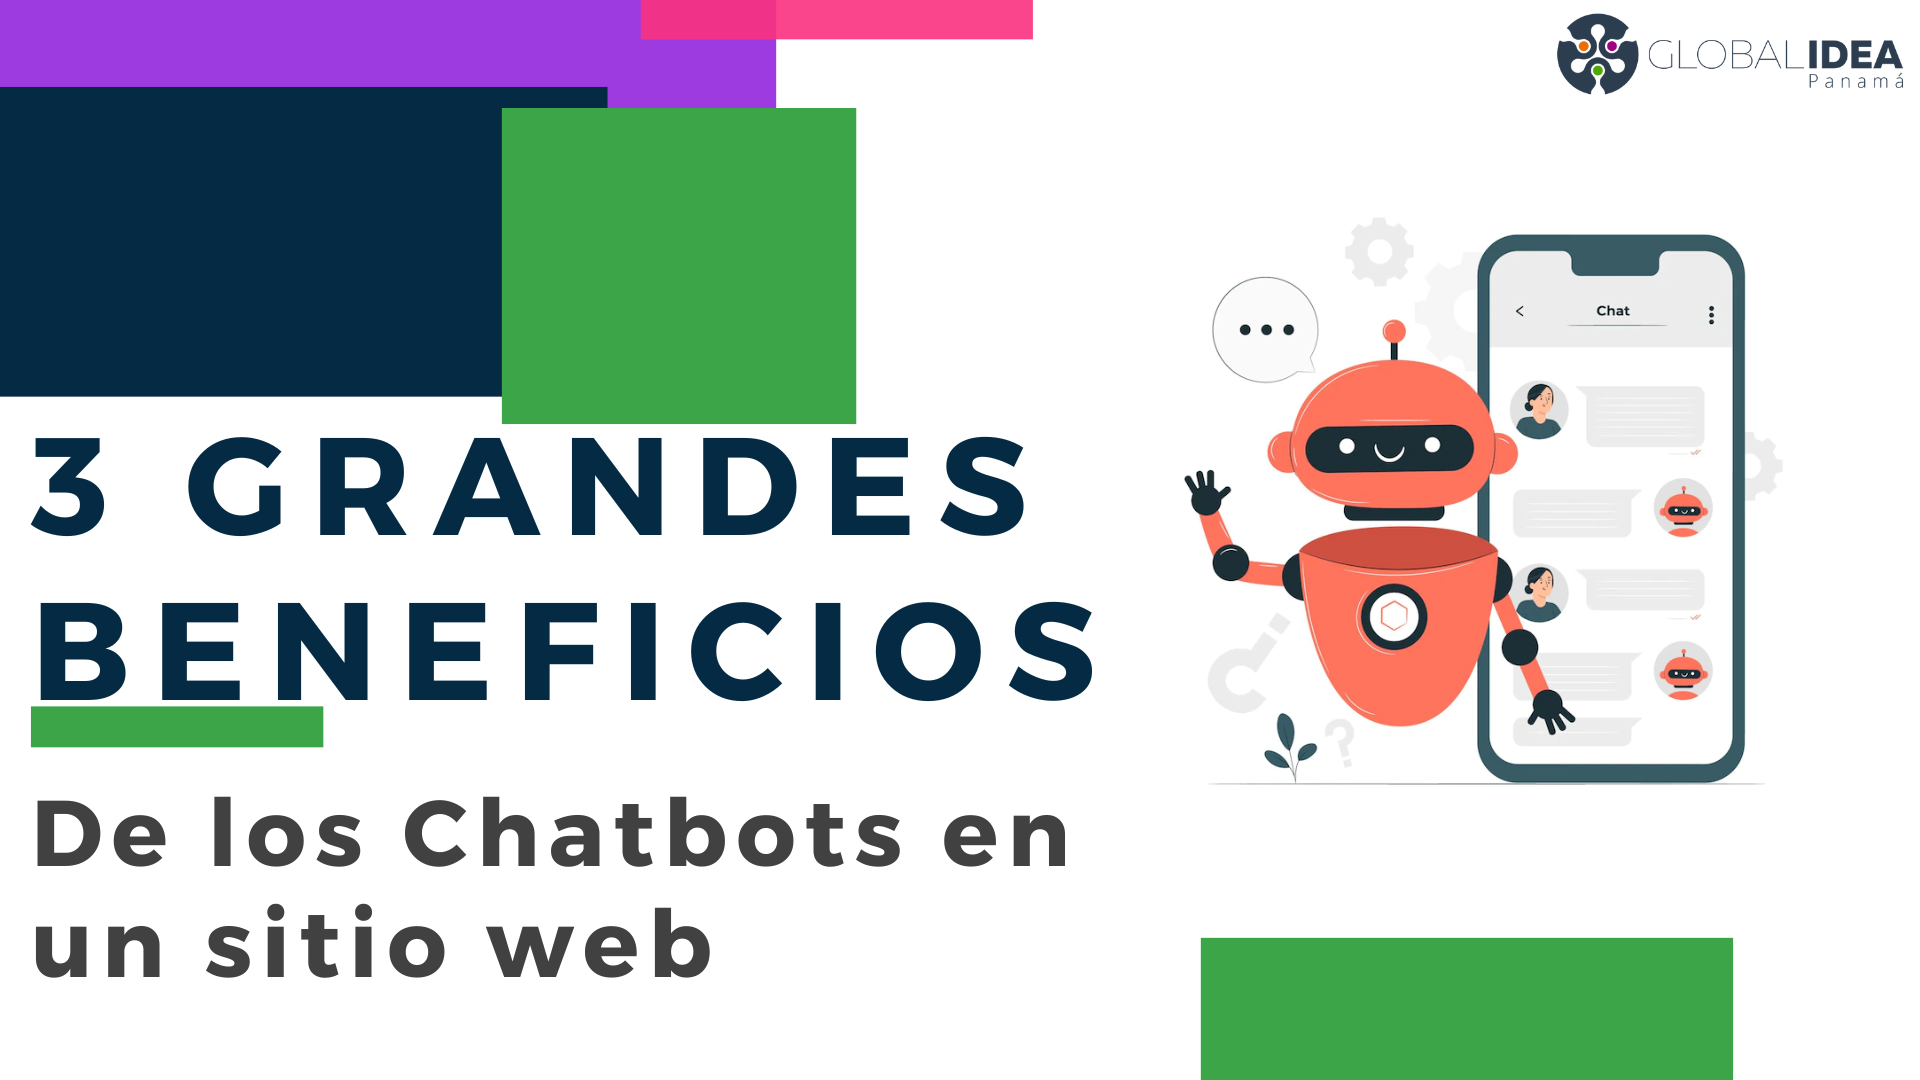 3 grandes beneficios De los Chatbots en el sitio web - Global Idea Panama - Asistente Virtual Facebook Chatbot - Fogata Bots